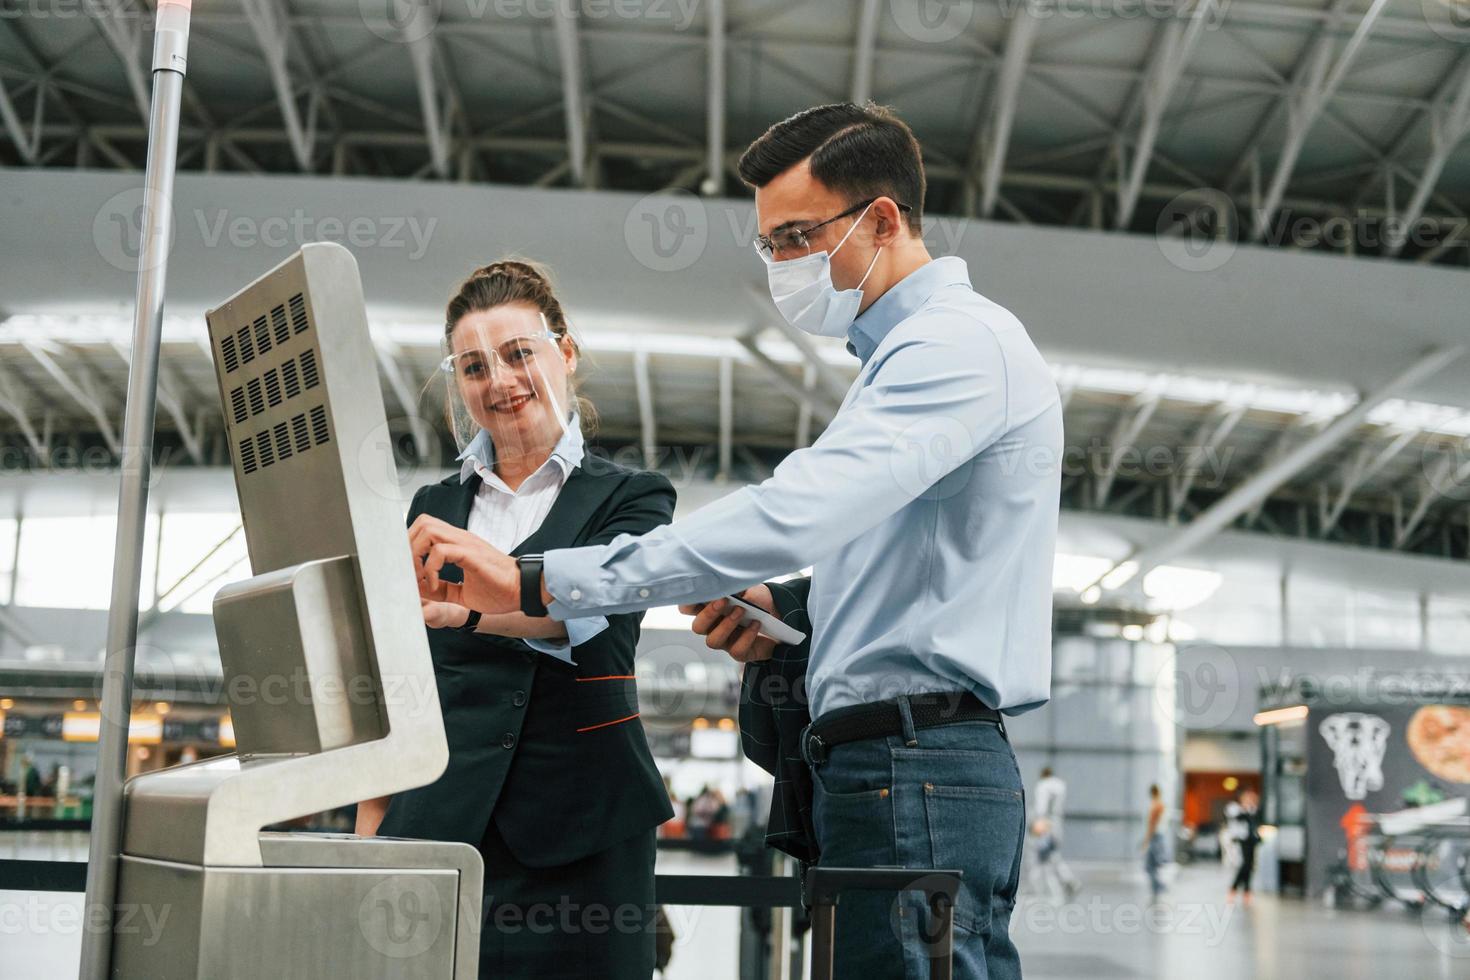 funcionário ajudando usando o terminal. jovem empresário em roupas formais está no aeroporto durante o dia foto